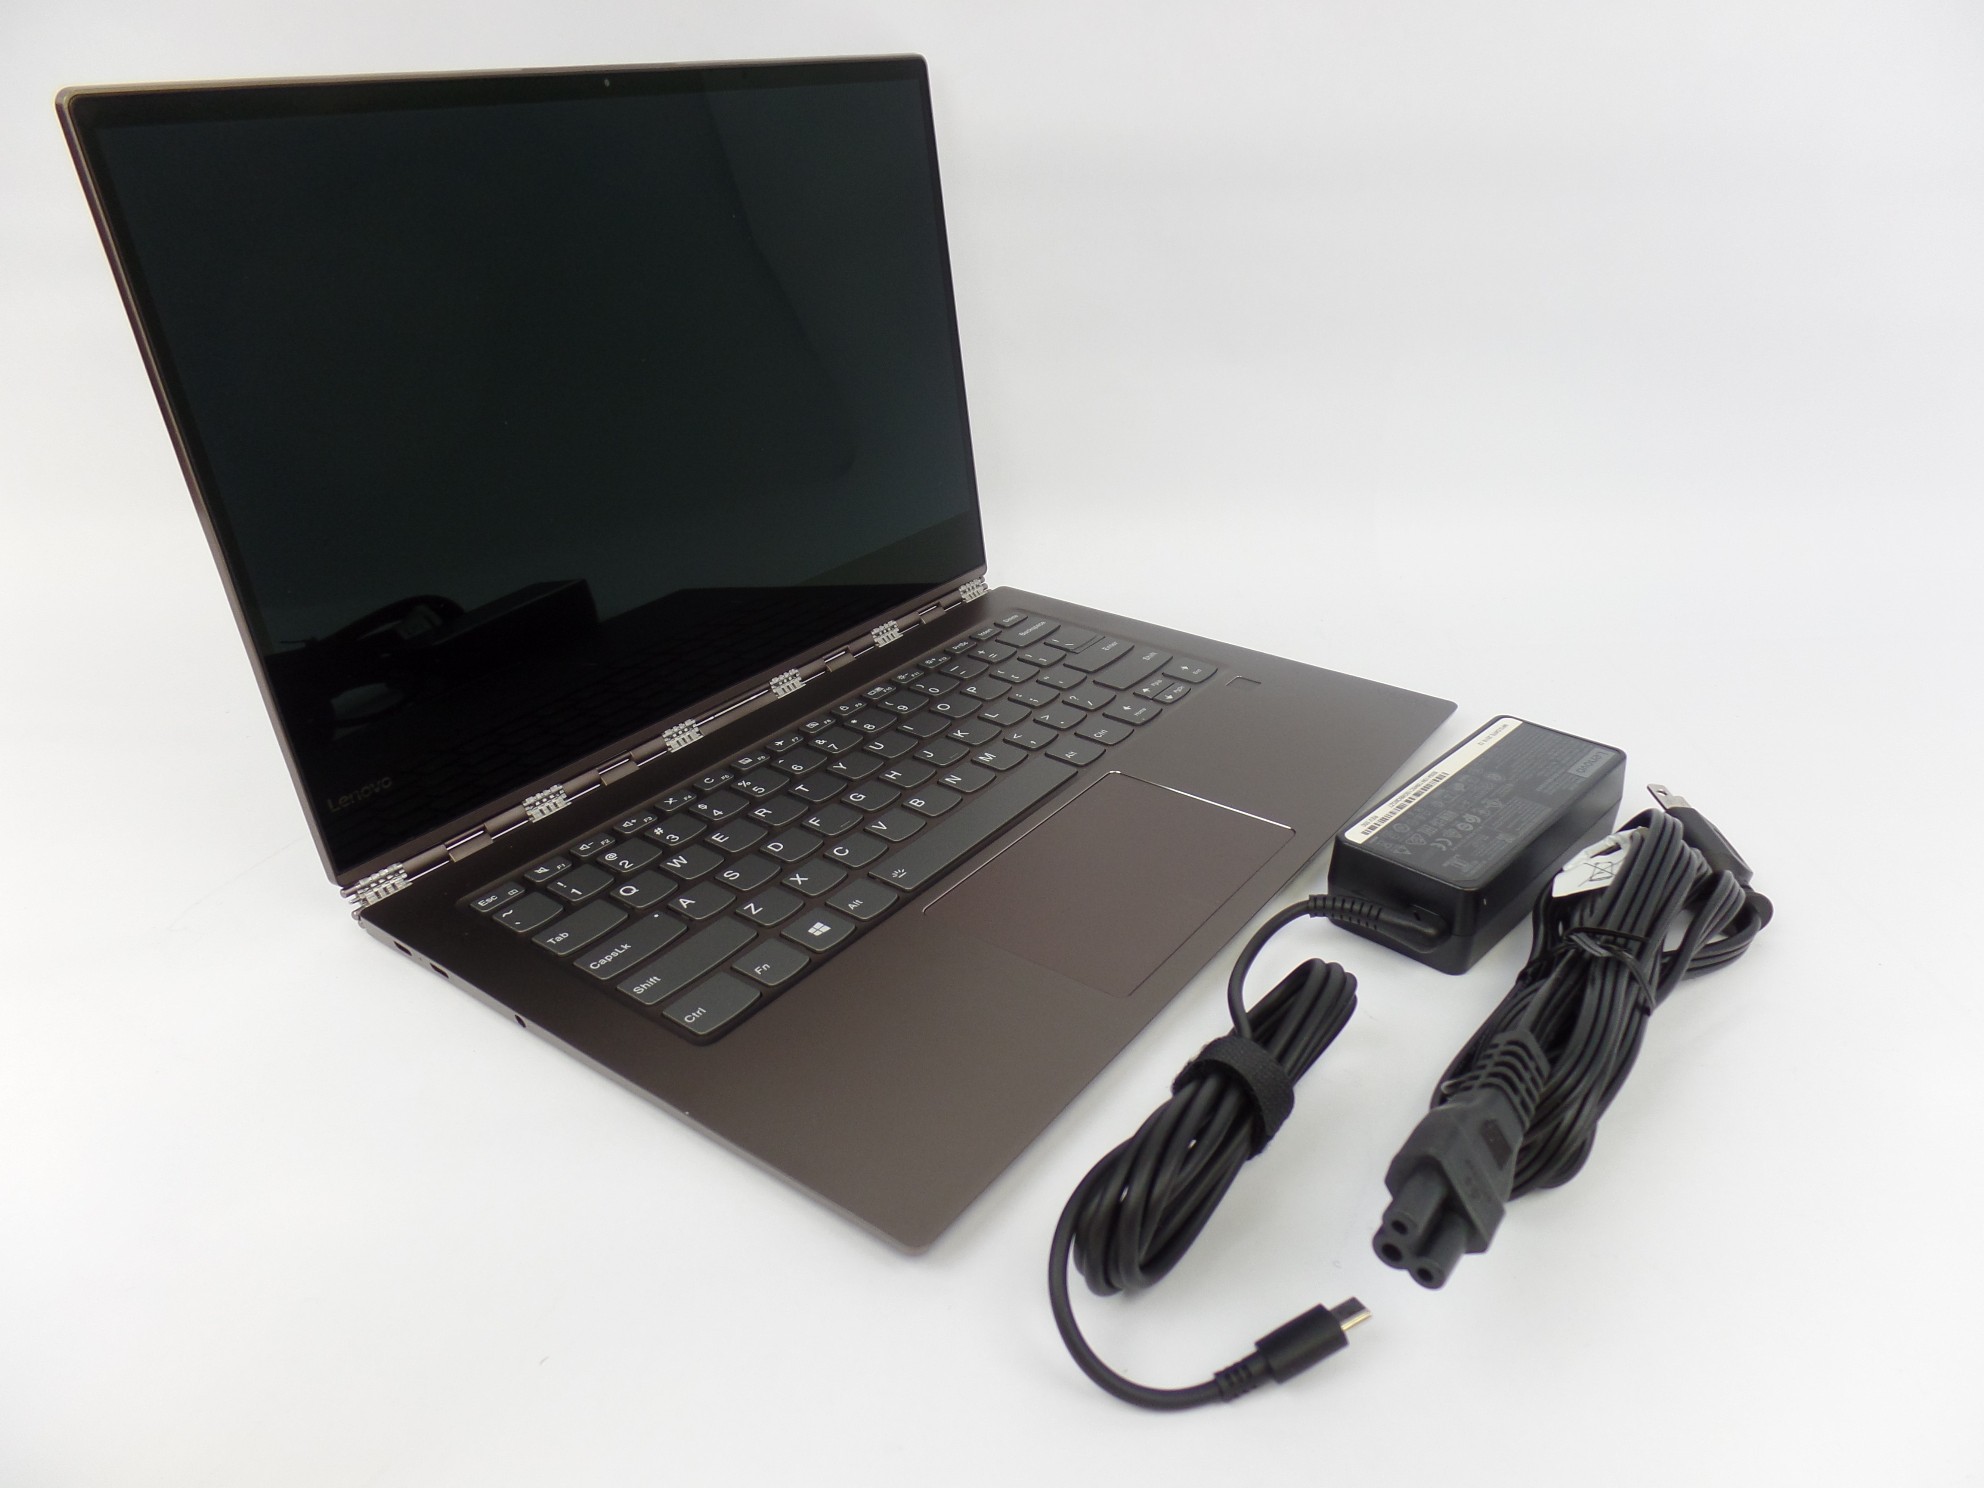 Lenovo Yoga 920-13IKB 13.9" FHD Touch i7-8550U 1.8GH 8GB 256GB W10H 2in1 Laptop